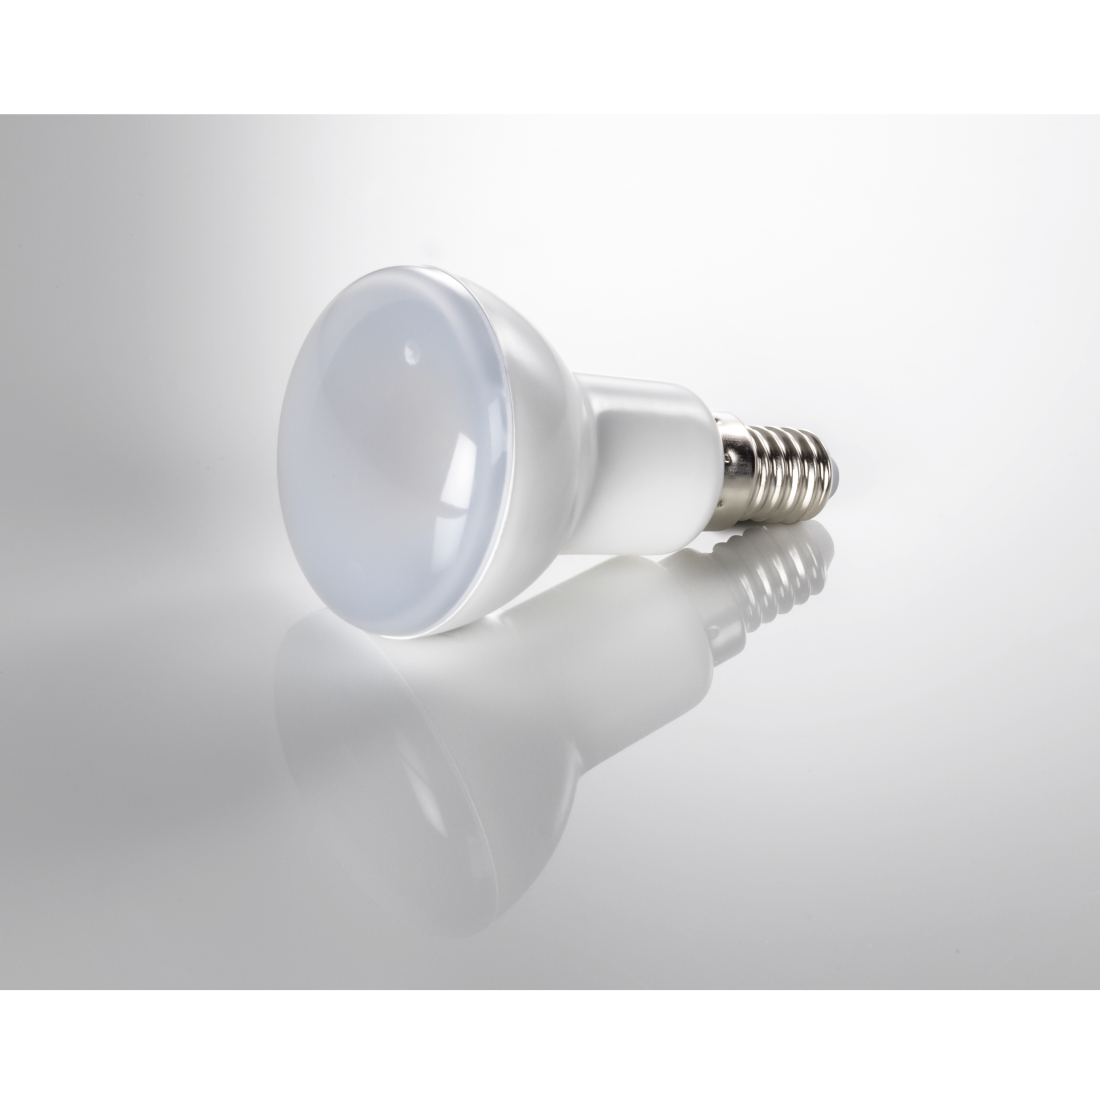 abx3 Druckfähige Abbildung 3 - Xavax, LED-Lampe, E14, 450lm ersetzt 39W, Reflektorlampe R50, Warmweiß, 2 Stück